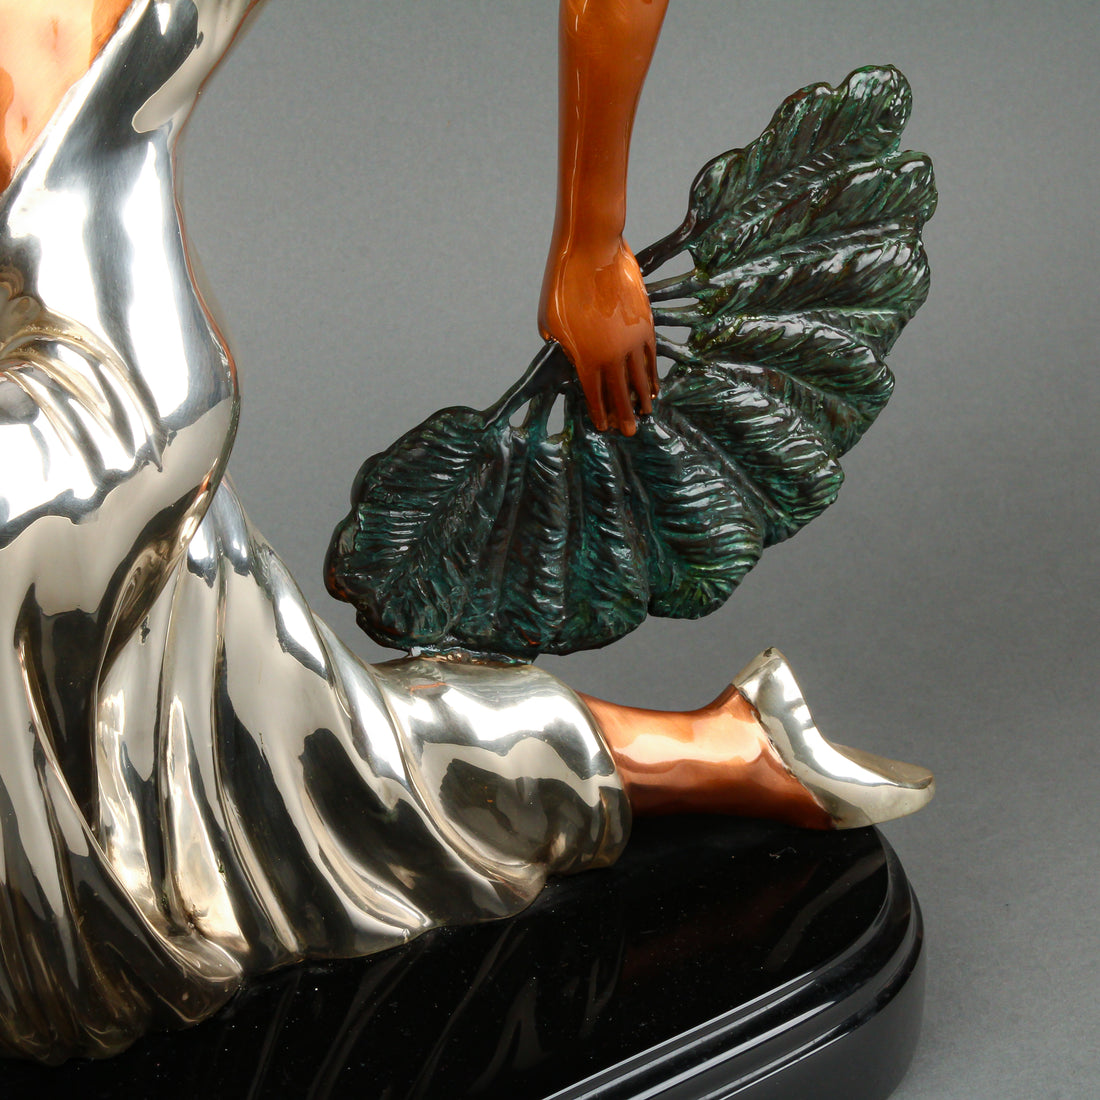 D'ARGENTA - Fan Dancer - Cast Silver & Copper Sculpture on Polymer Base